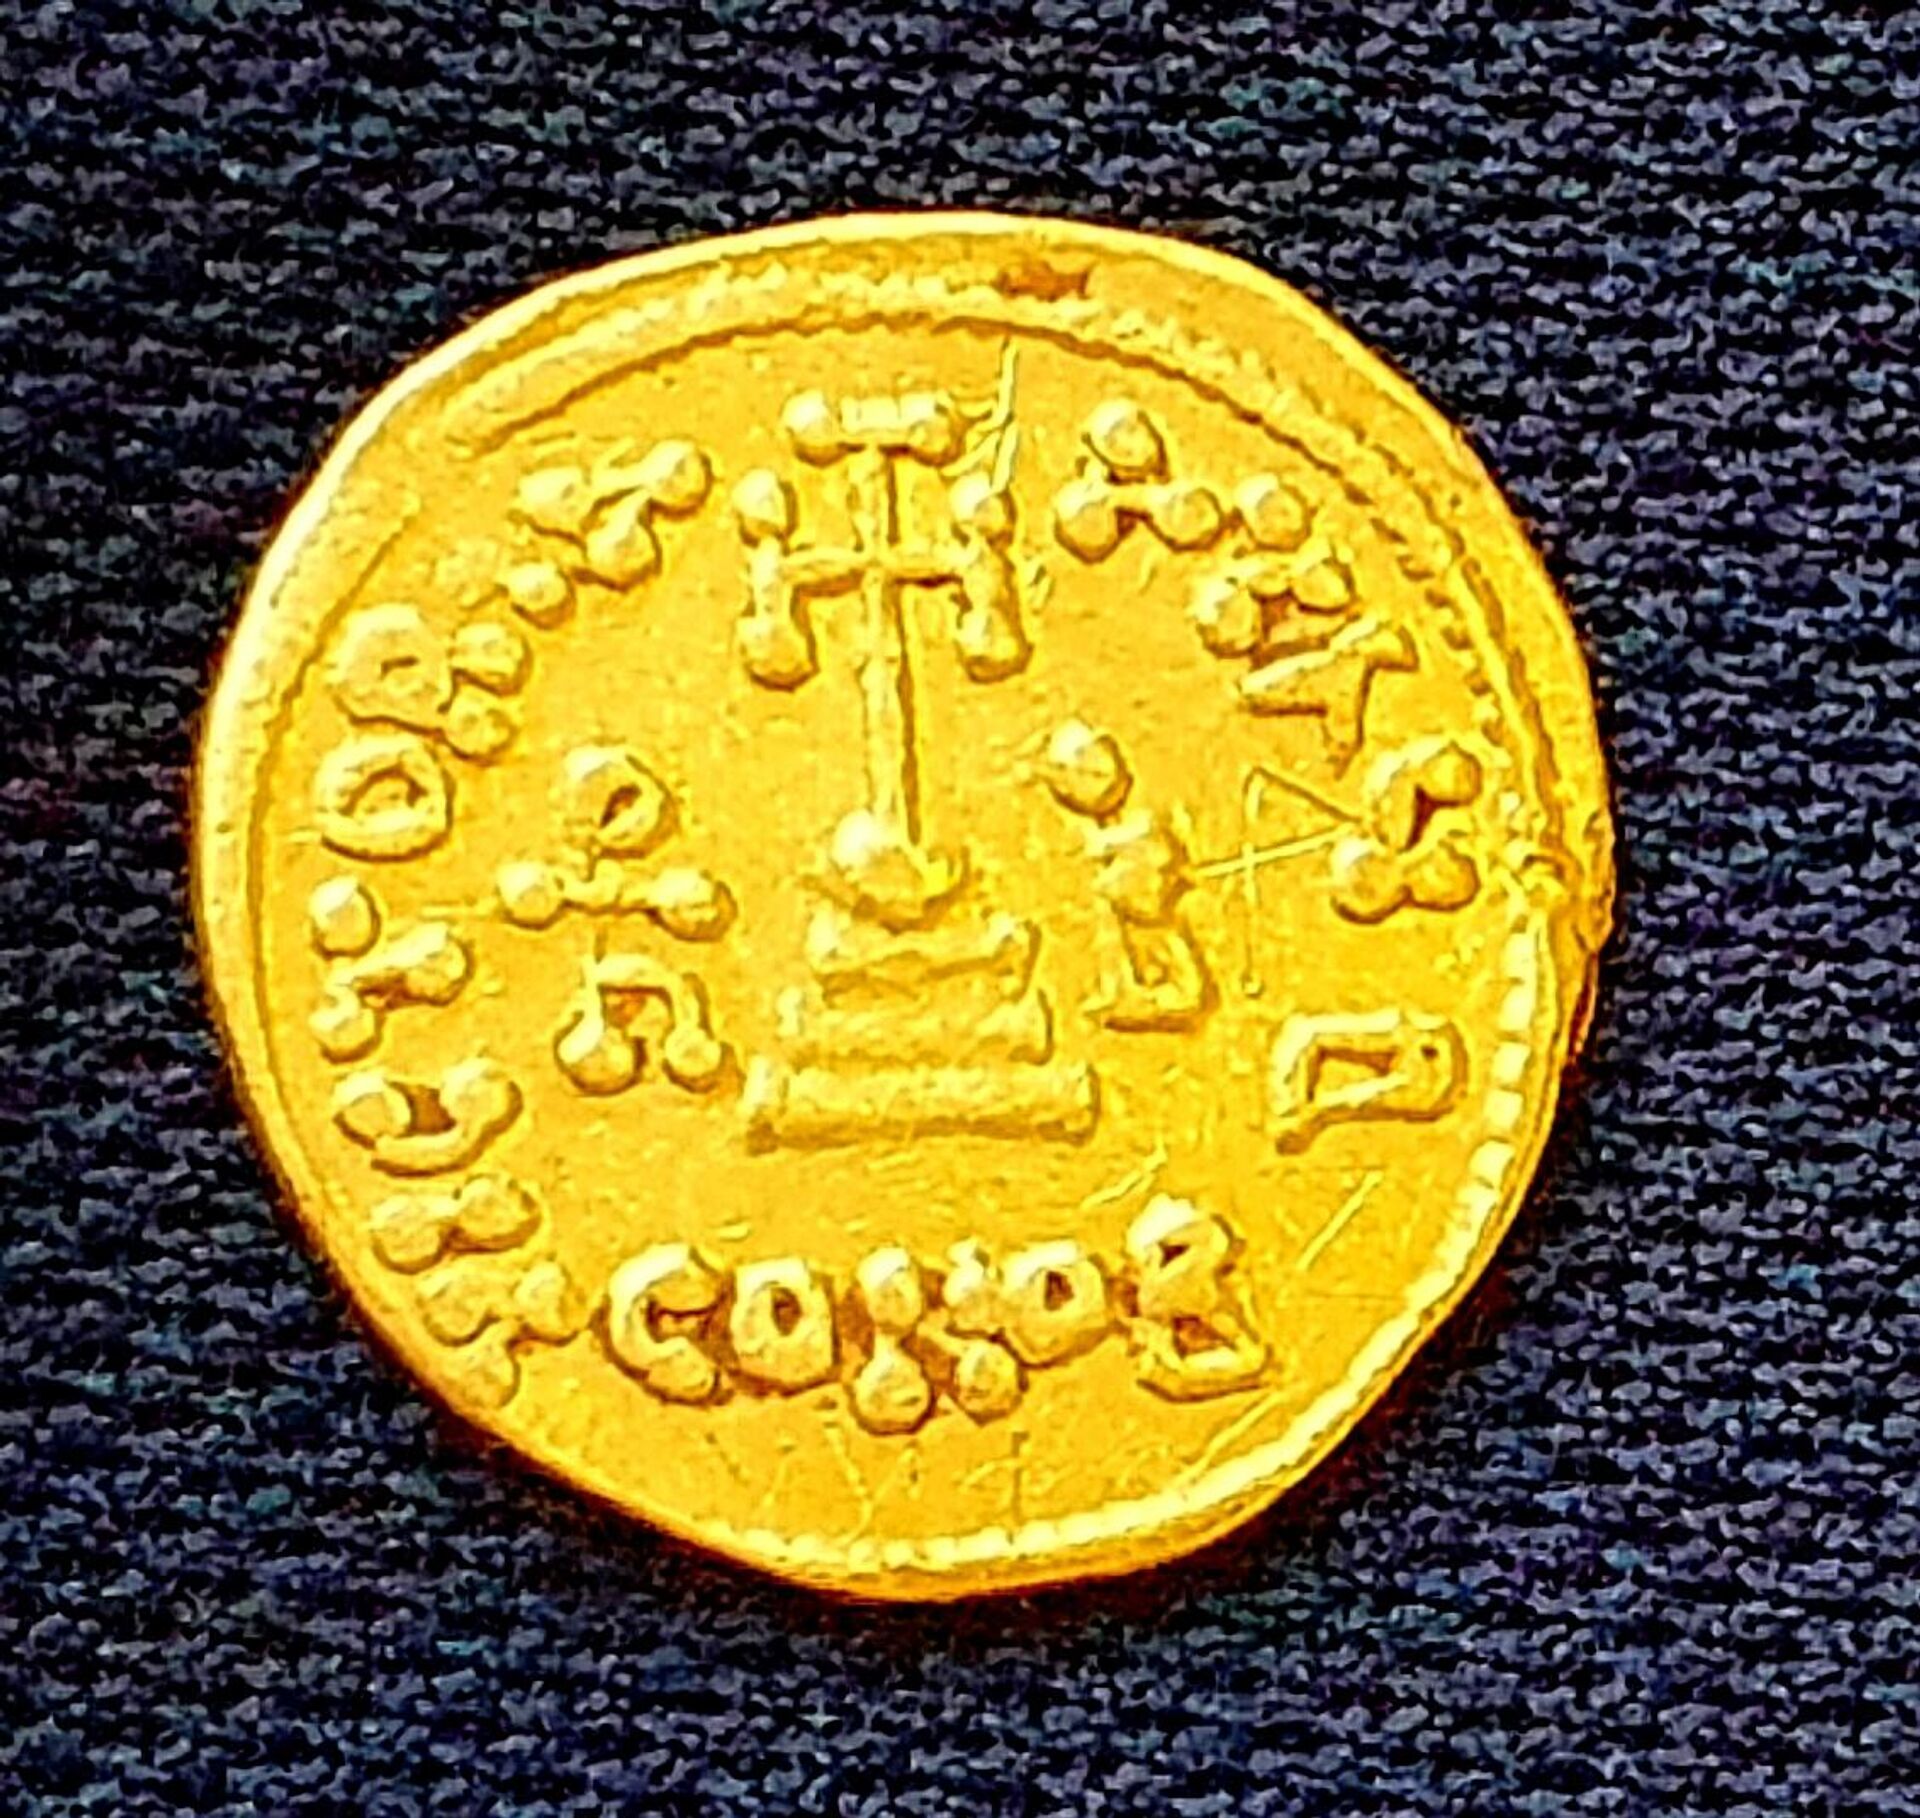 La moneda de oro hallada en una ciudad cercana a Tel Aviv - Sputnik Mundo, 1920, 20.08.2021